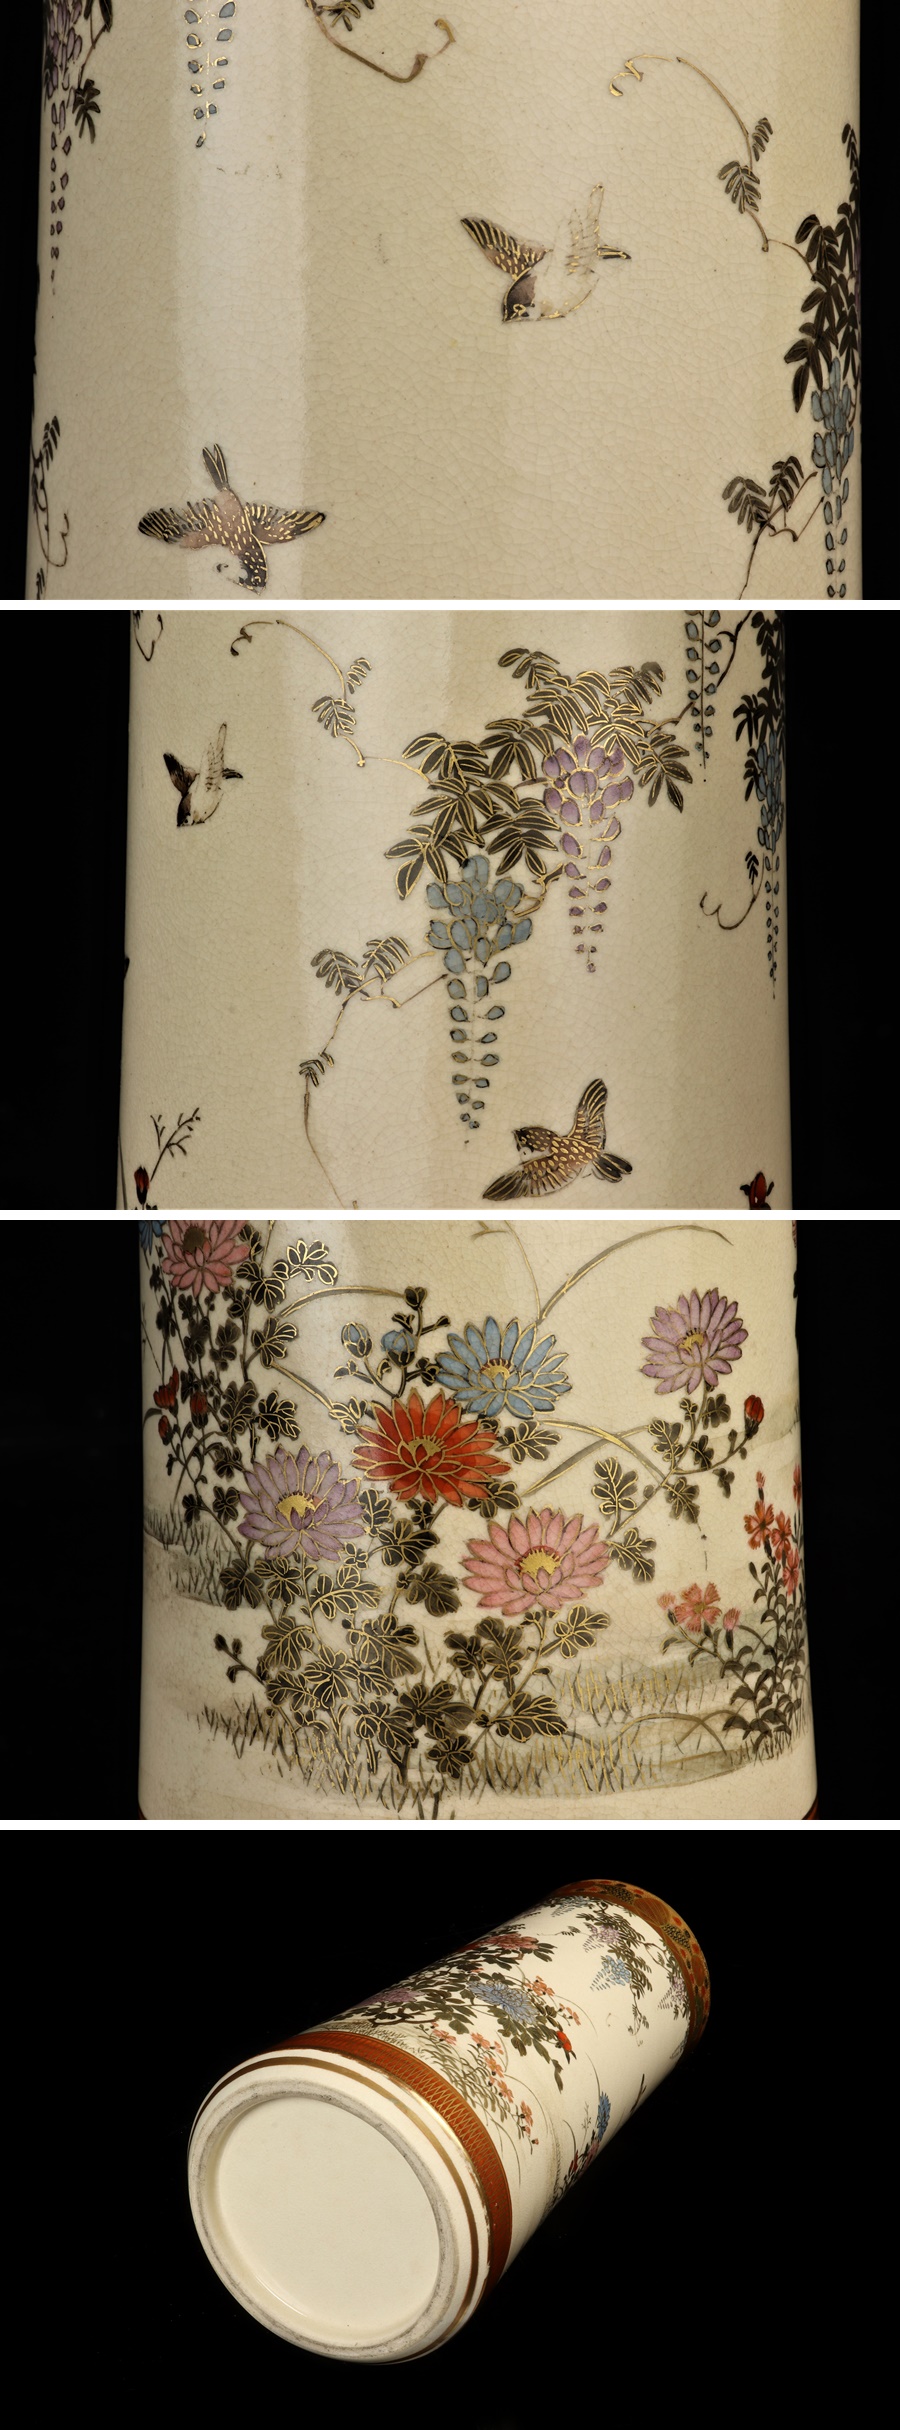 【低価格安】華道具 明治期 薩摩焼 金彩 花鳥図 花瓶 花入 花生 骨董品 古美術品 1167tcfz 薩摩